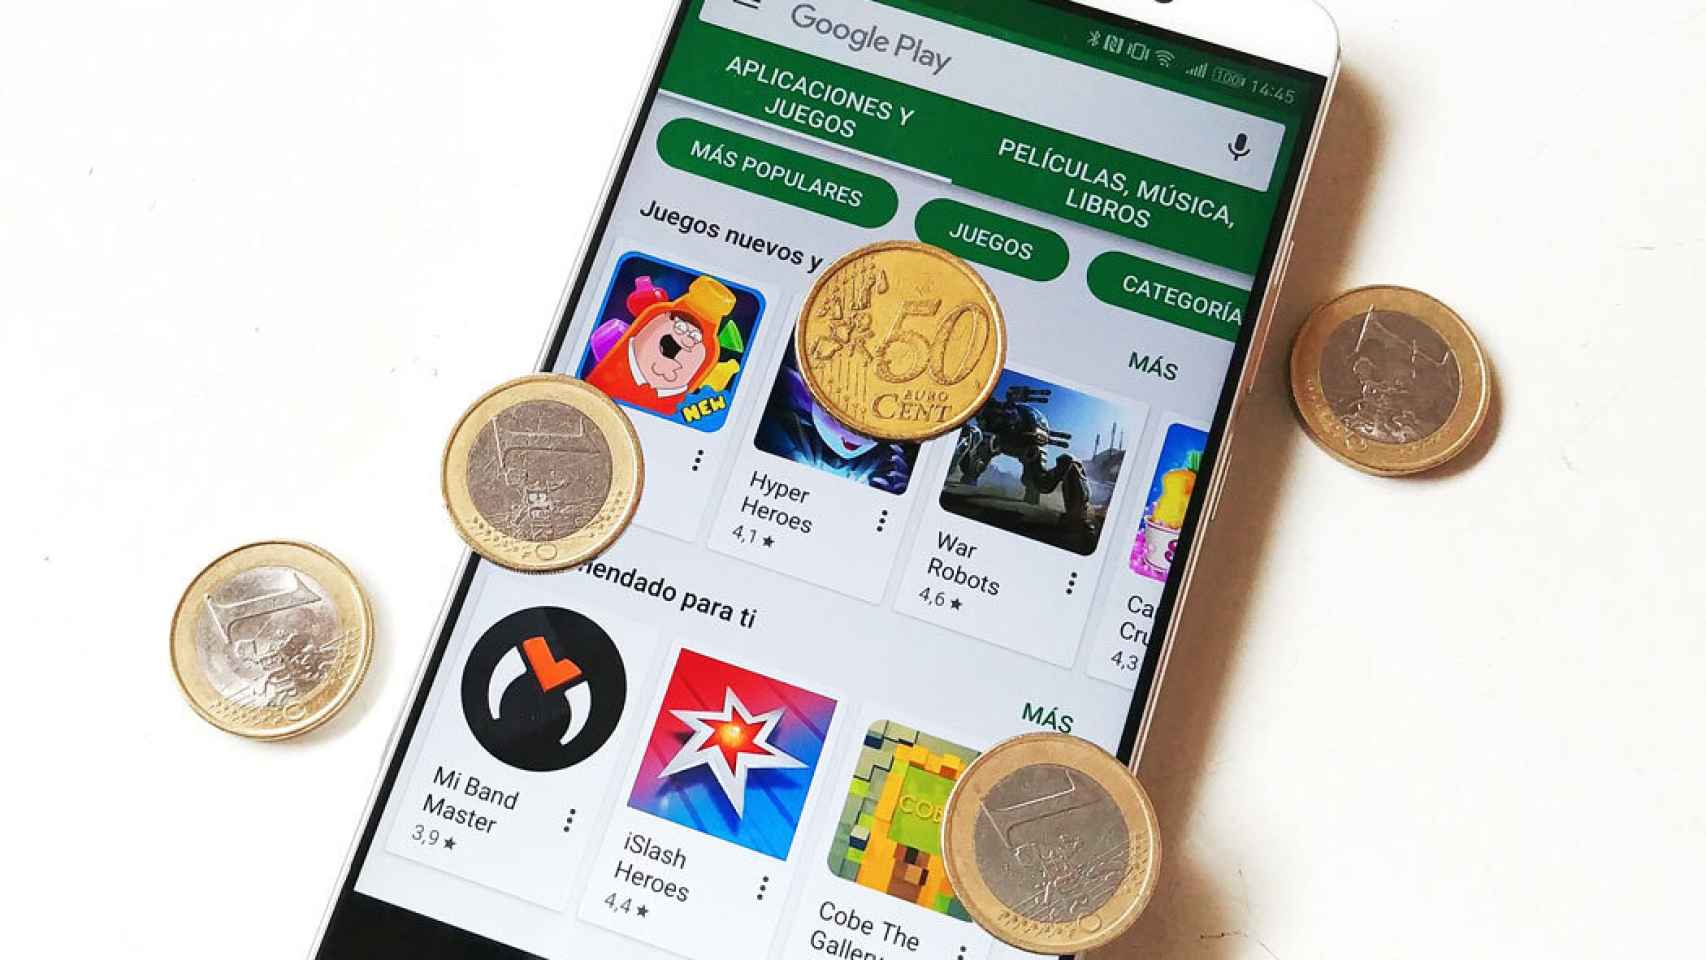 100 ofertas de Google Play: aplicaciones y juegos gratis y con